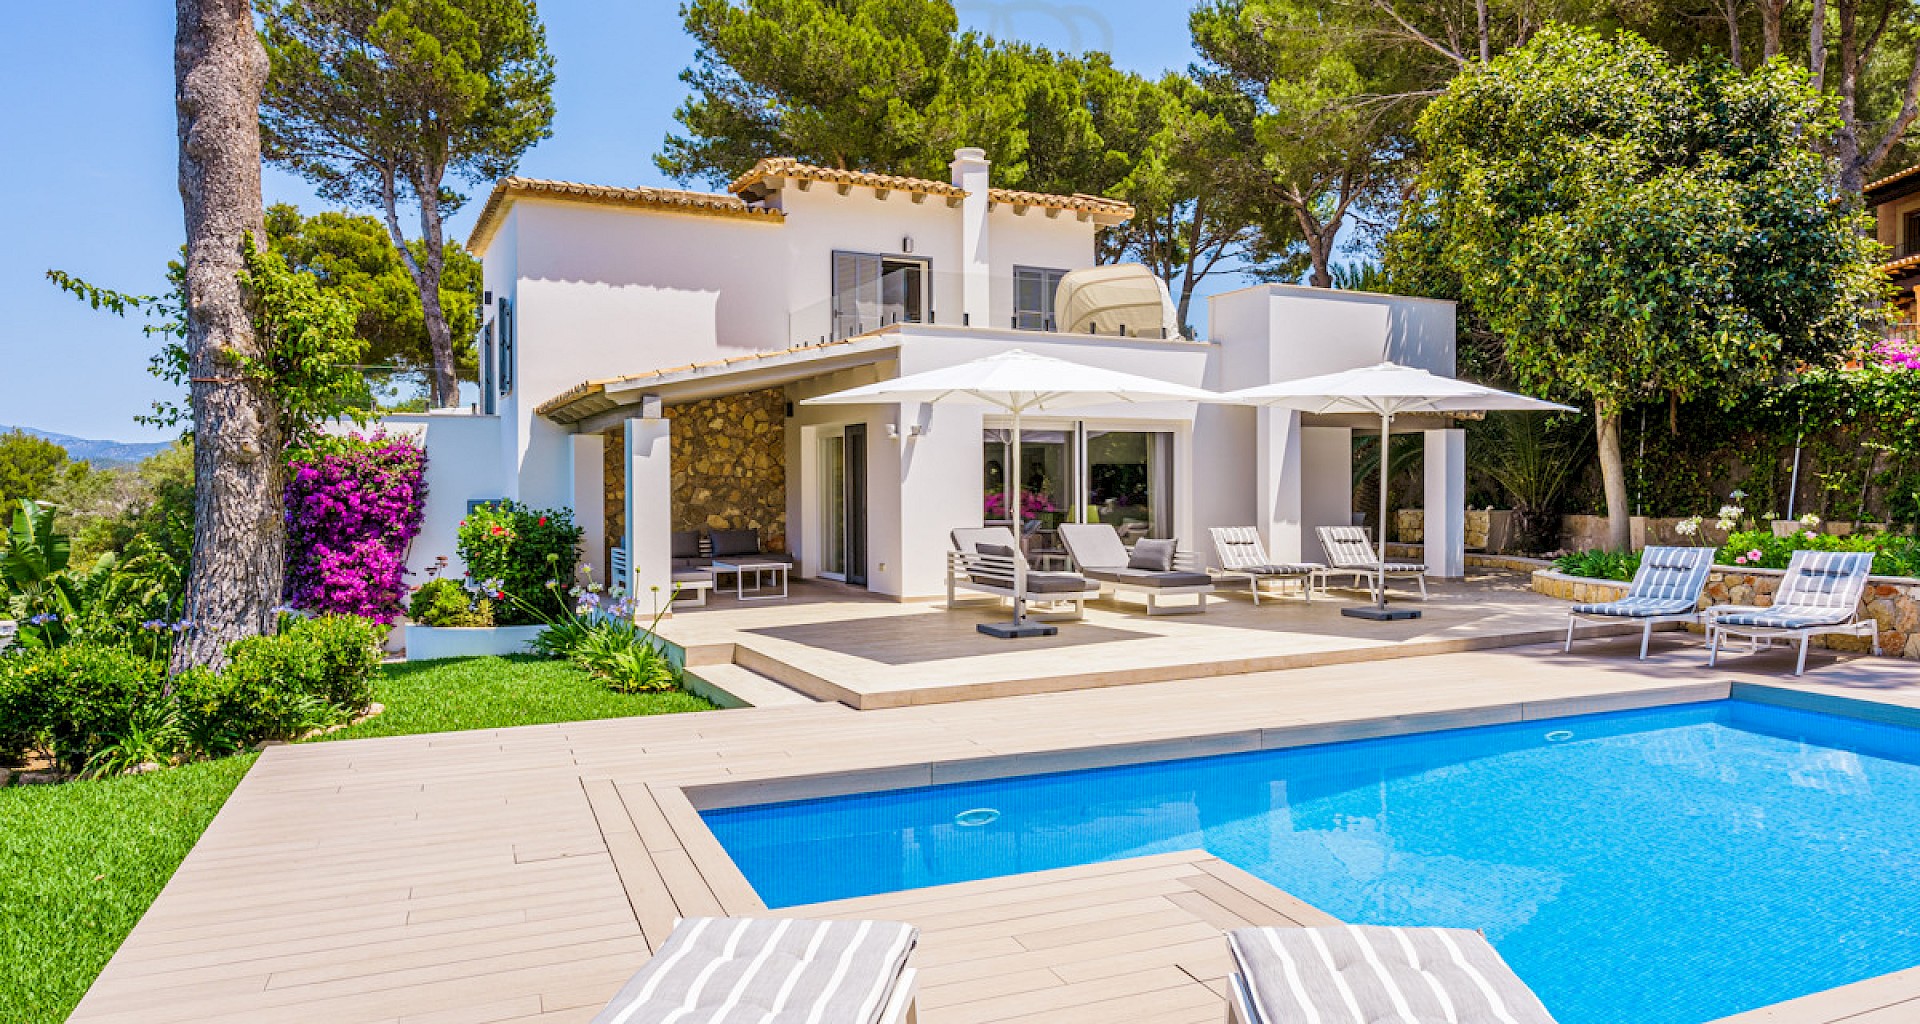 KROHN & LUEDEMANN Luxury family villa in Santa Ponsa with pool and garden Villa in Santa Ponsa mit Pool und Garten 28